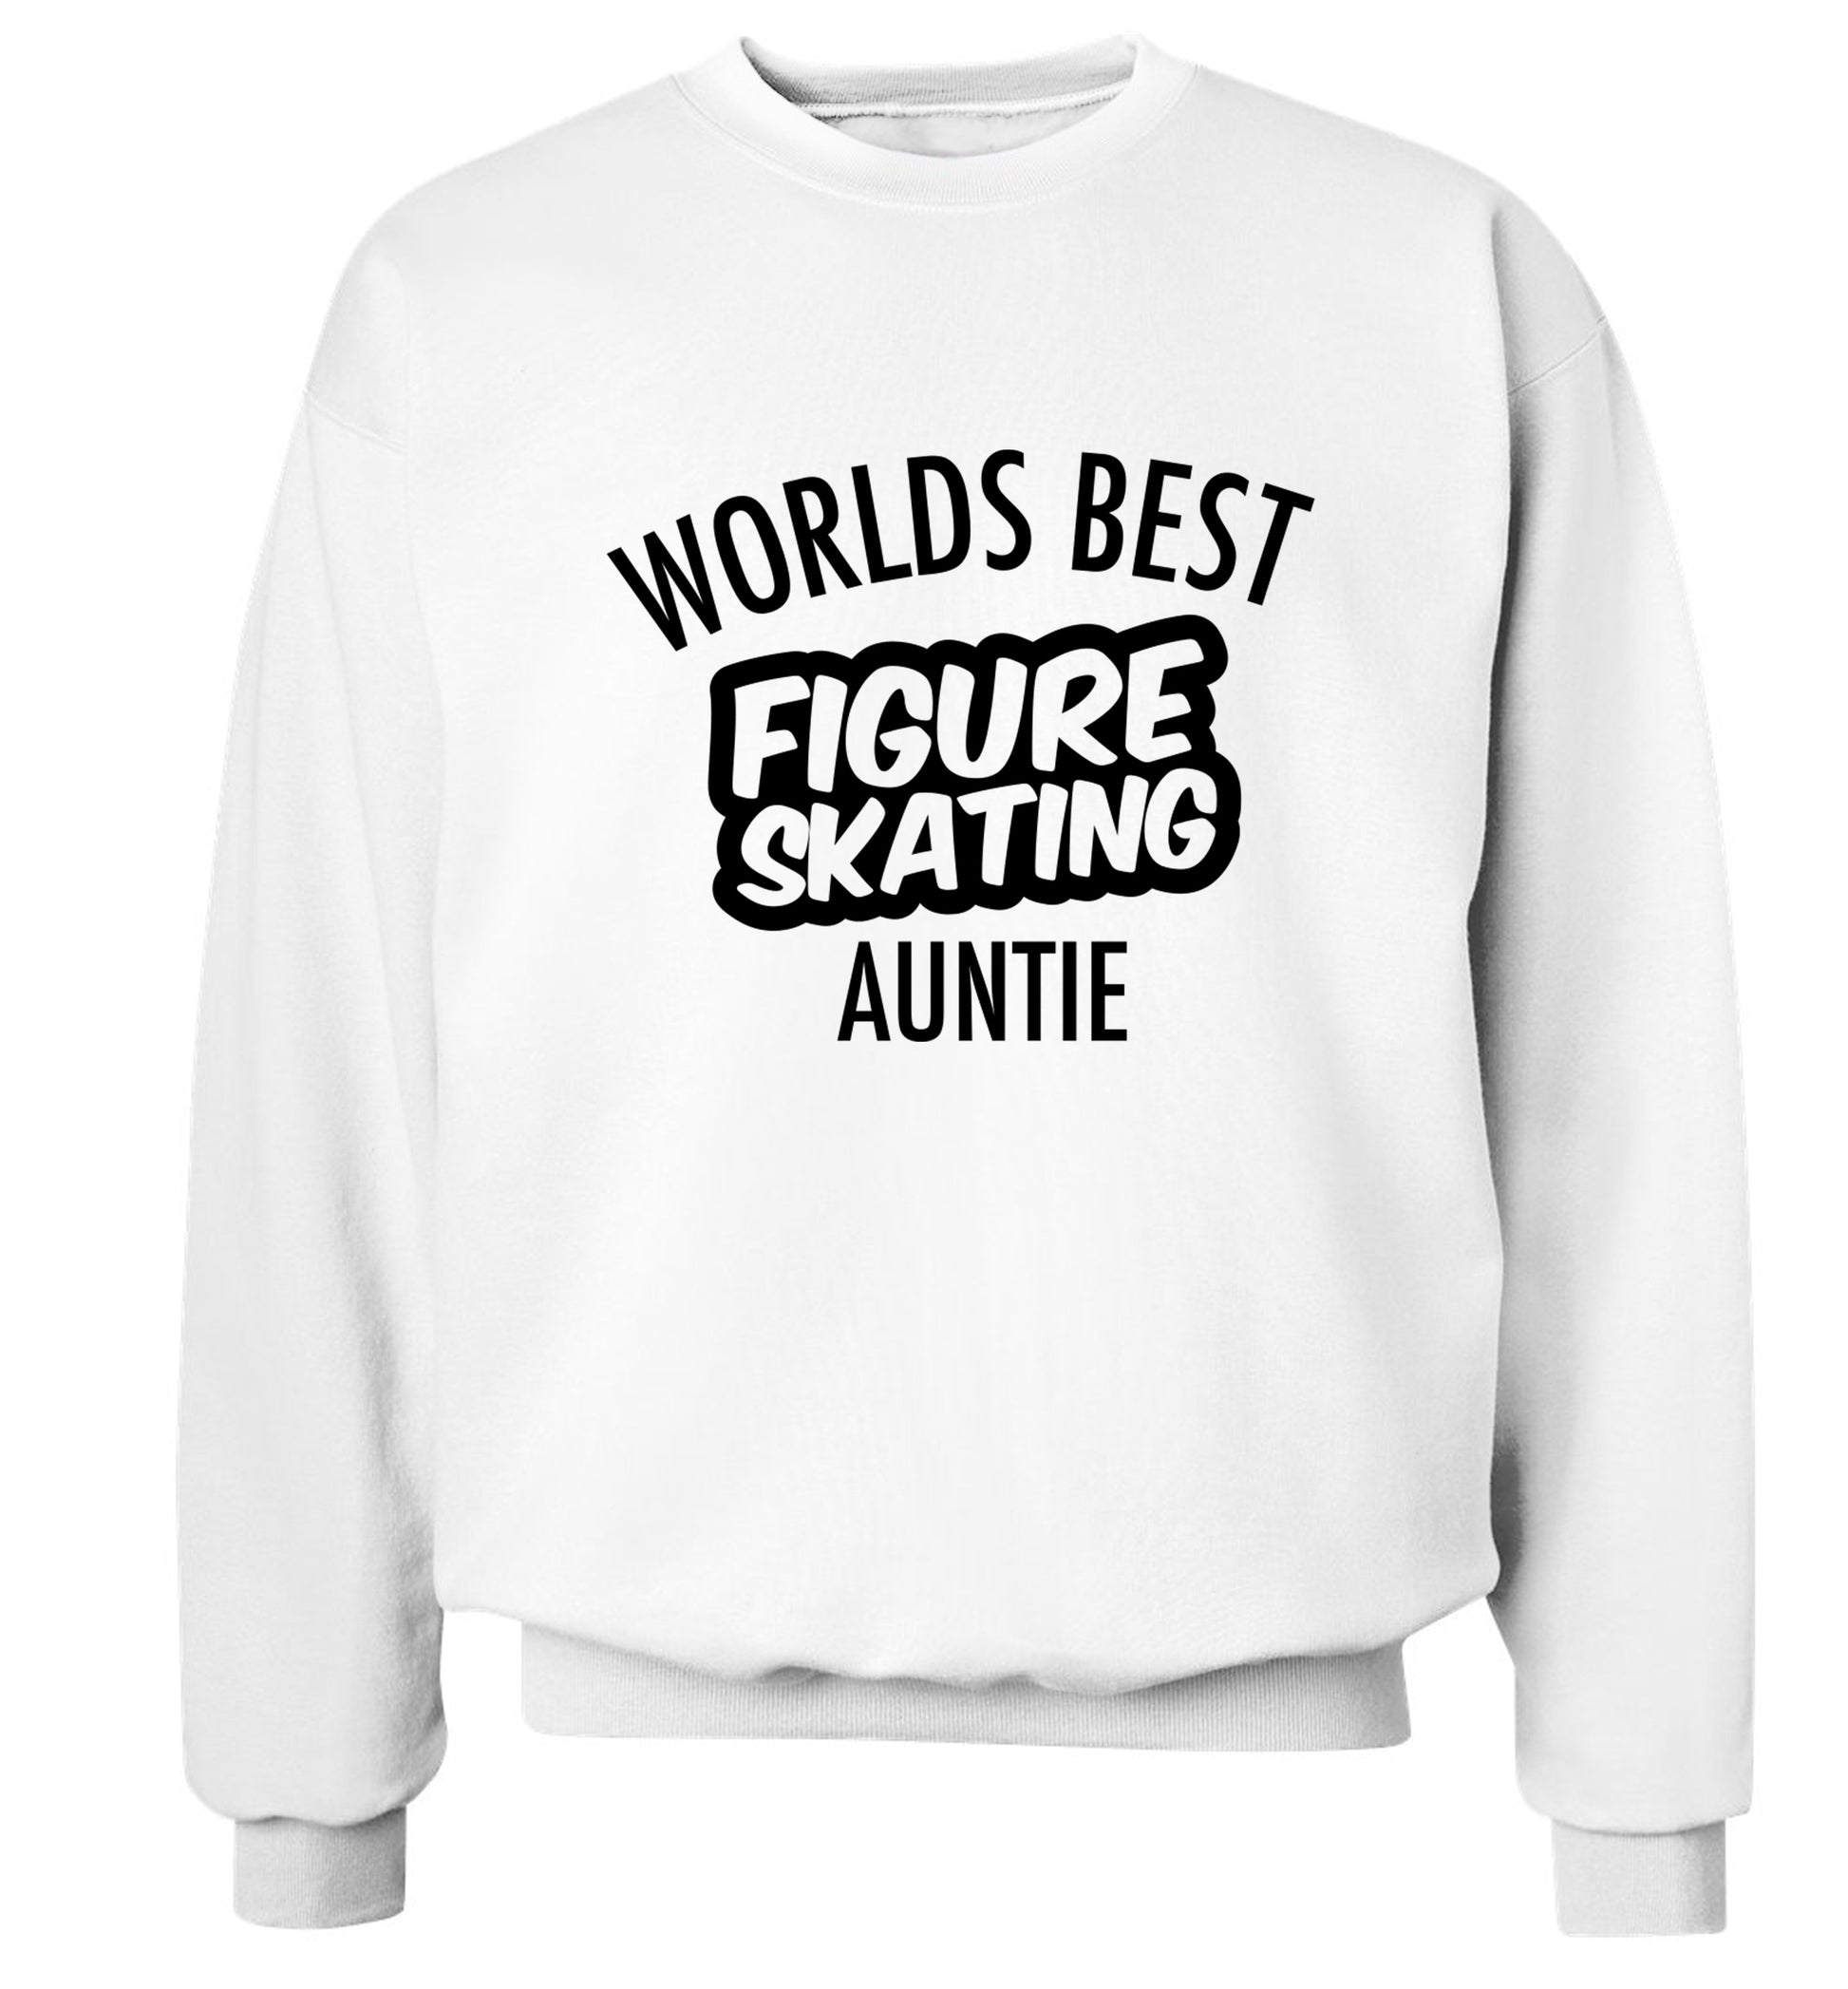 Worlds best figure skating auntie Adult's unisexwhite Sweater 2XL